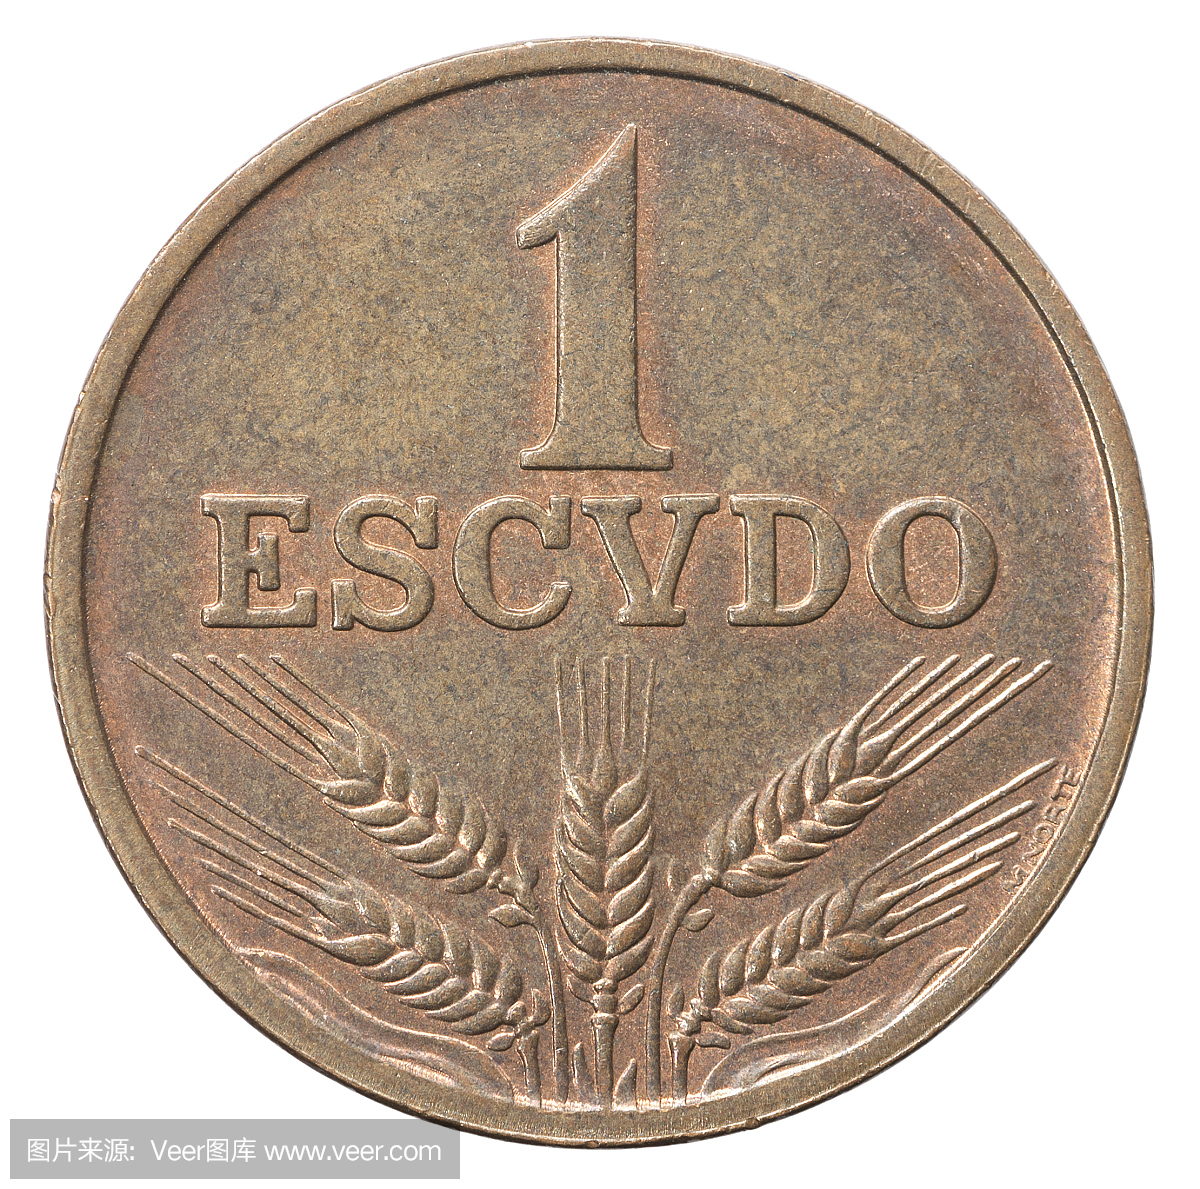 葡萄牙货币,葡萄牙钞票,葡萄牙埃斯库多,埃斯库